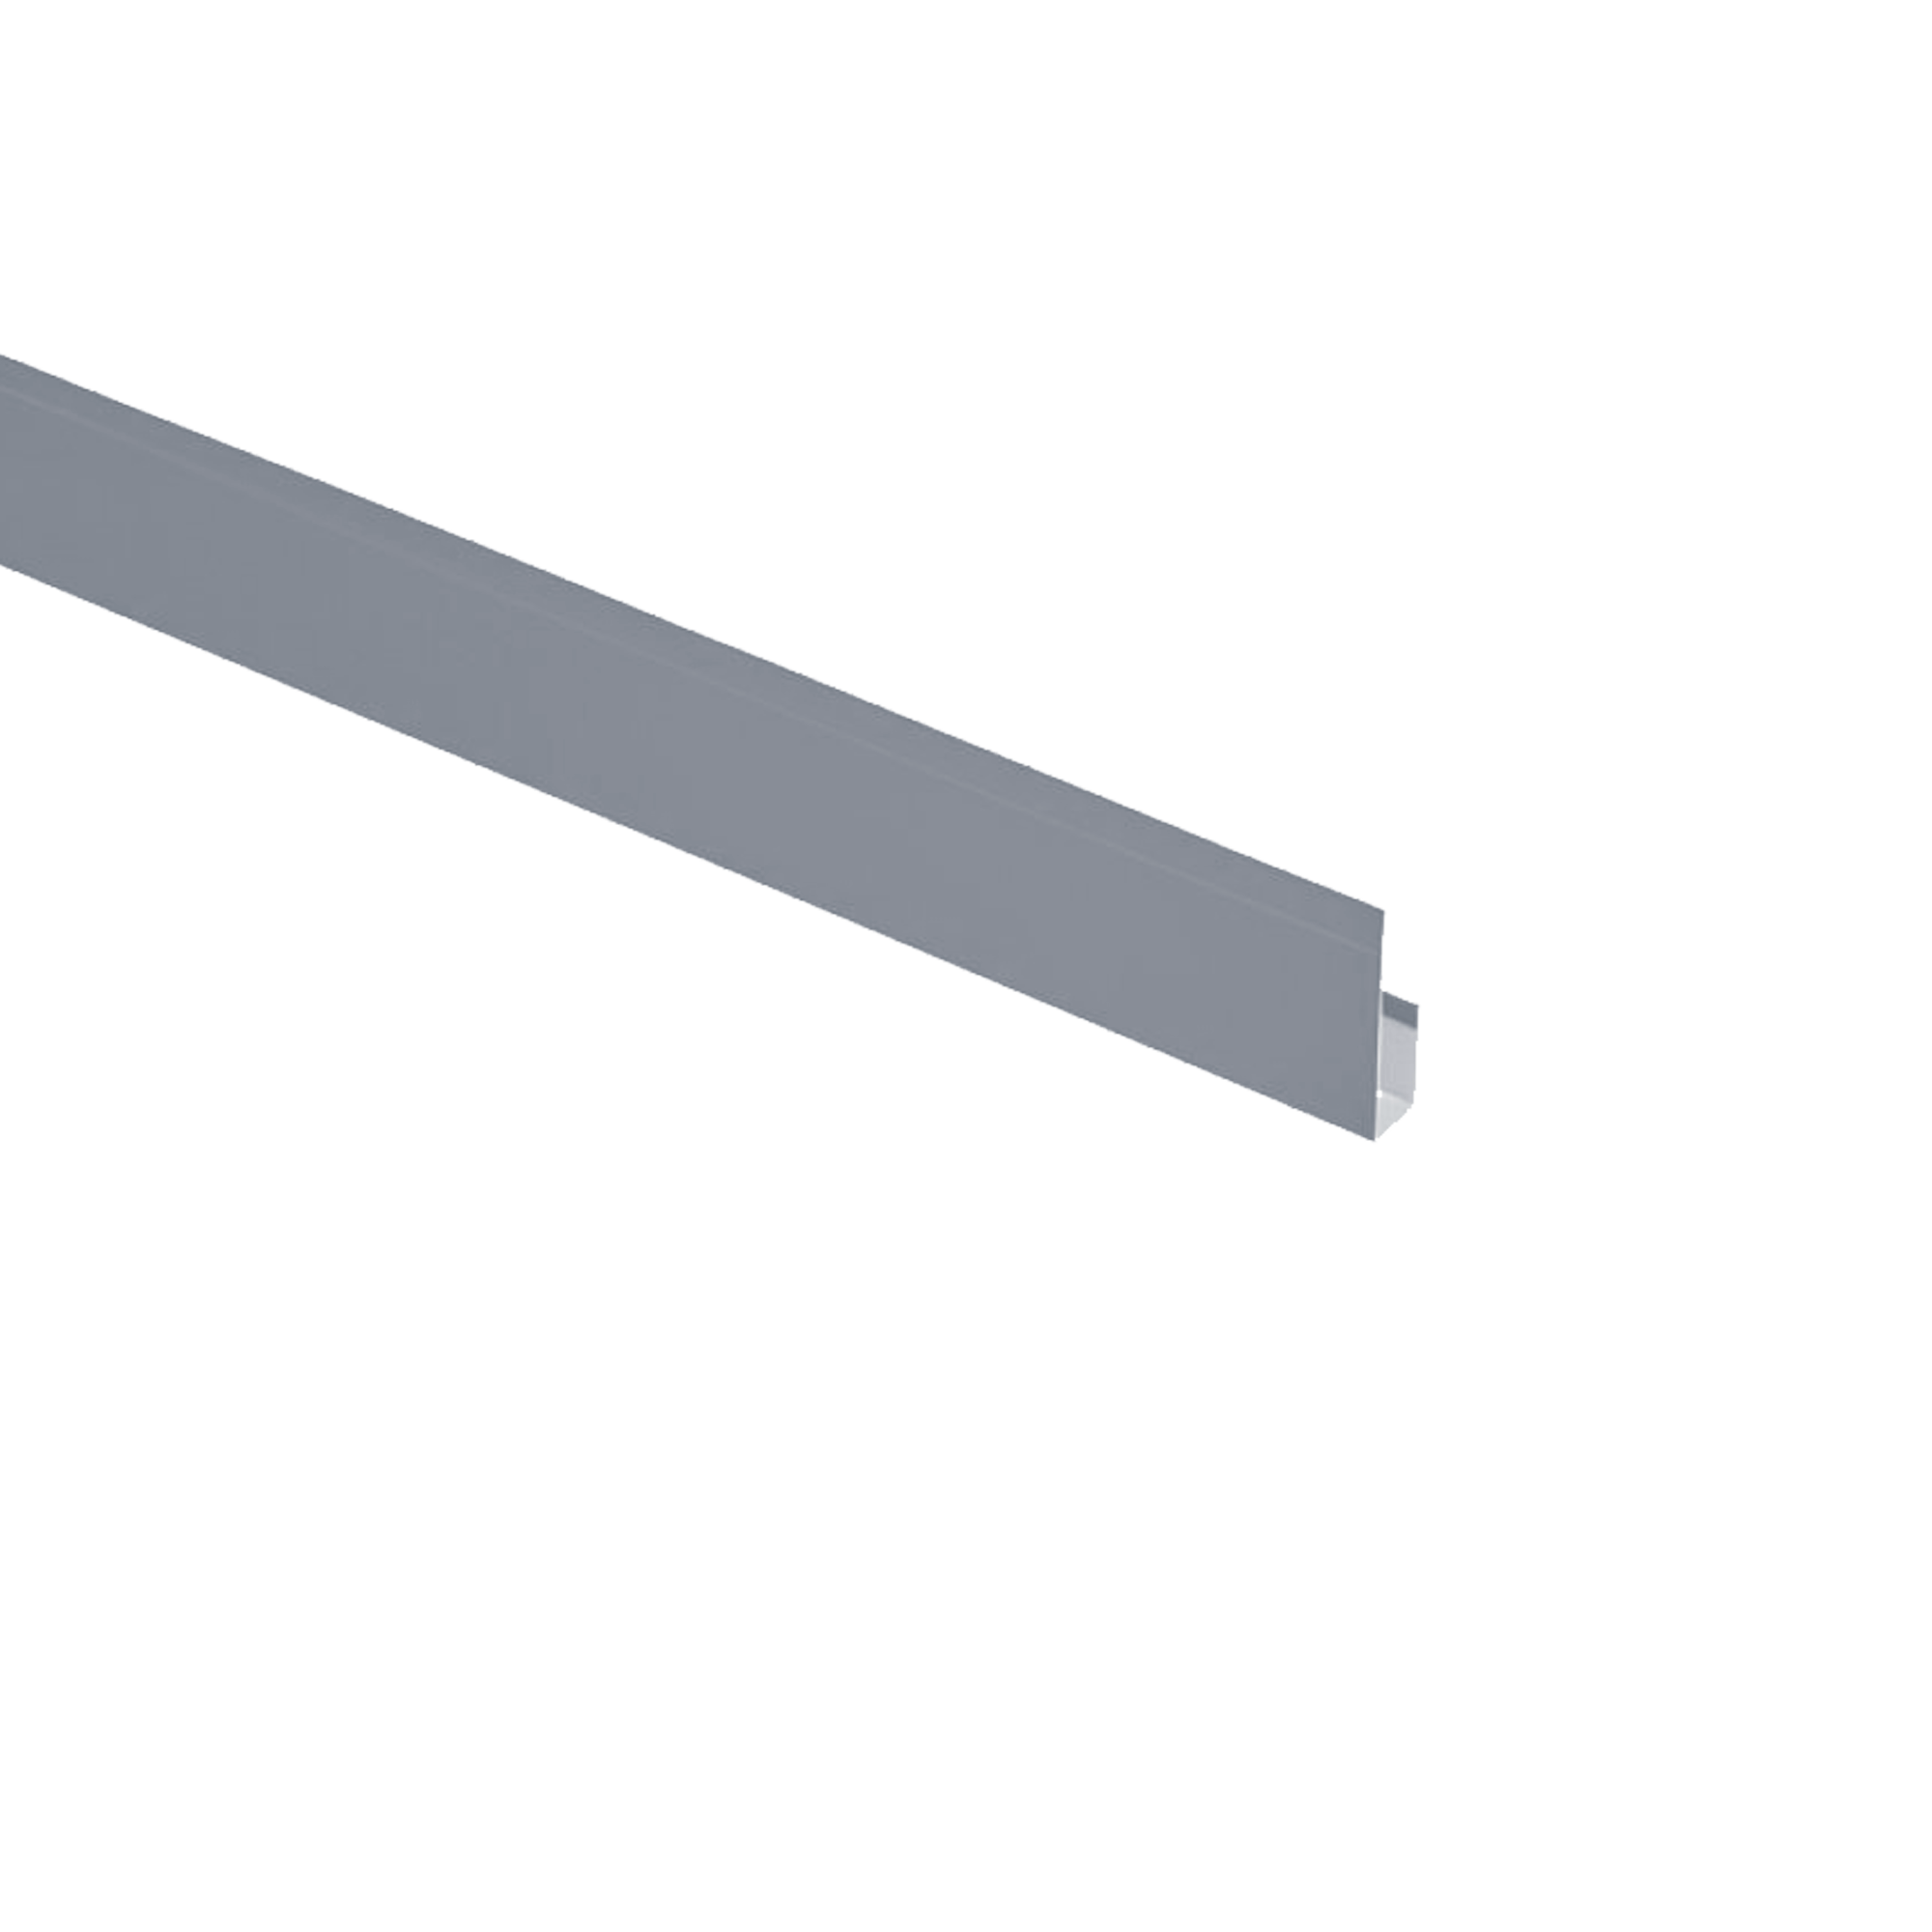 Планка завершающая Экобрус Алюминево-белый 0,45 мм Полиэстер Доборные элементы для сайдинга Кровля Сервис